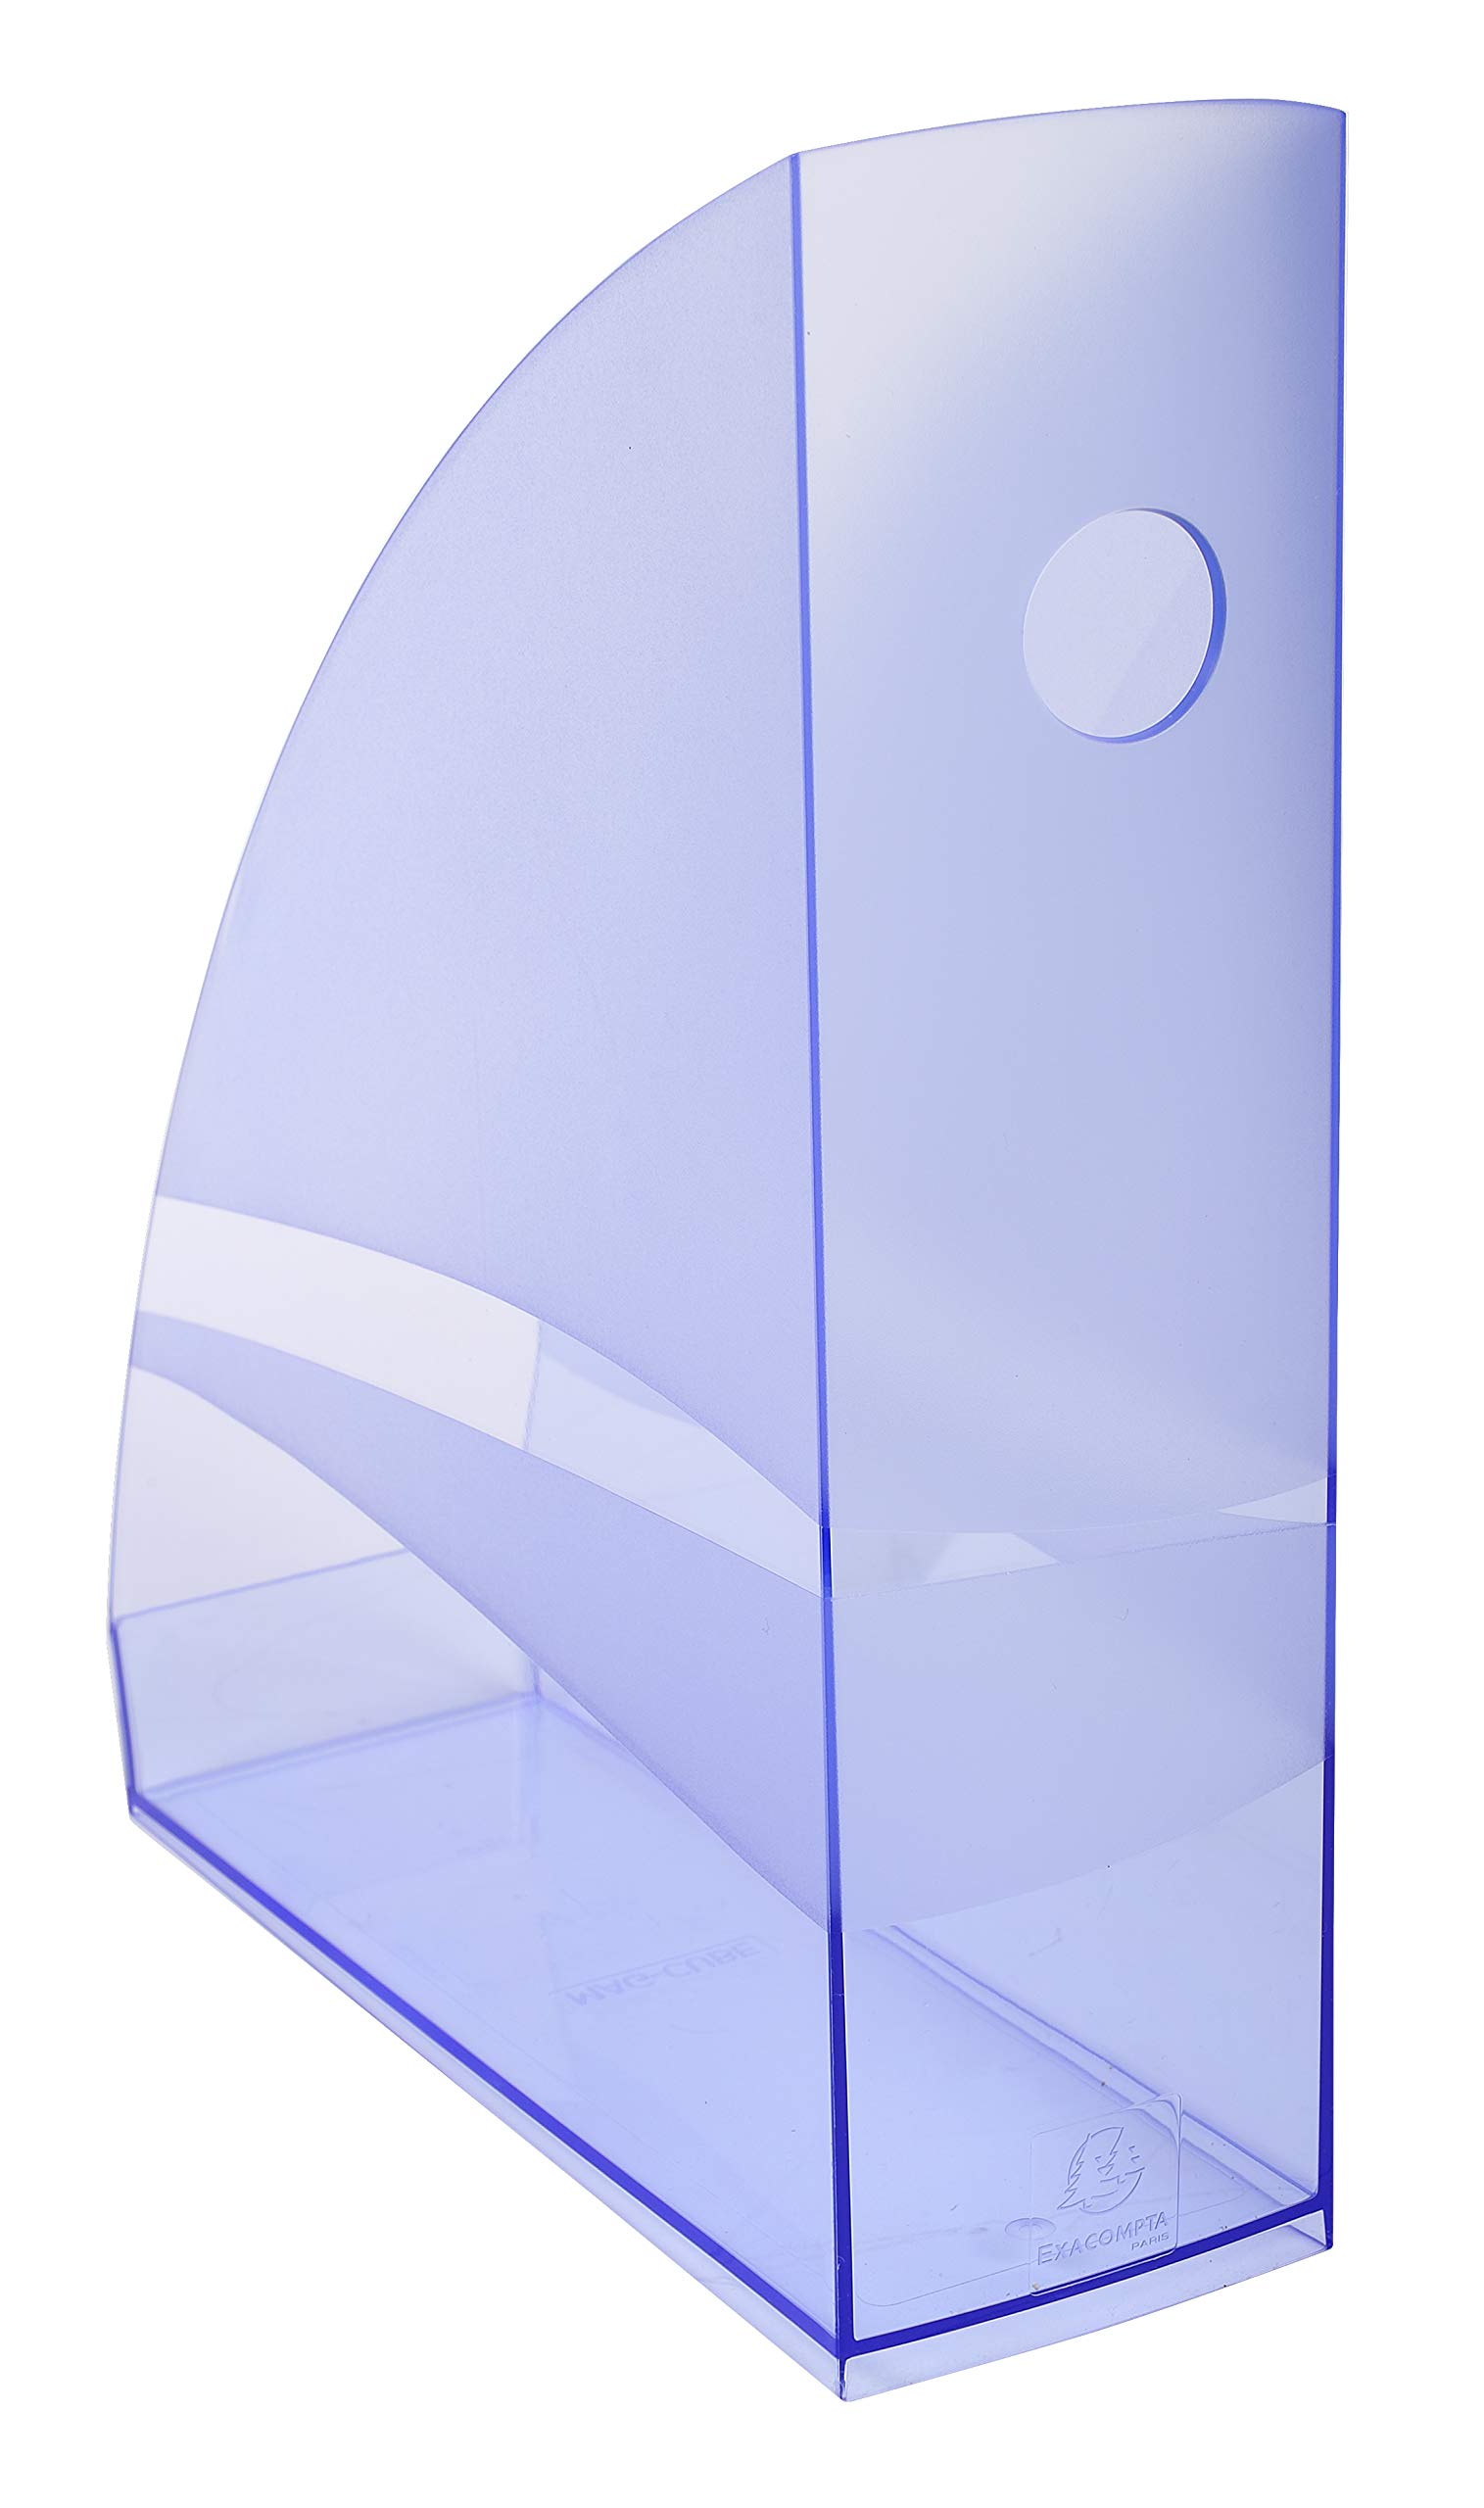 Exacompta 18210D Packung (mit 6 Stehsammler MAG-CUBE, 266x82x305 mm, für DIN A4+, robust und praktisch) 6 Stück eisblau transparent